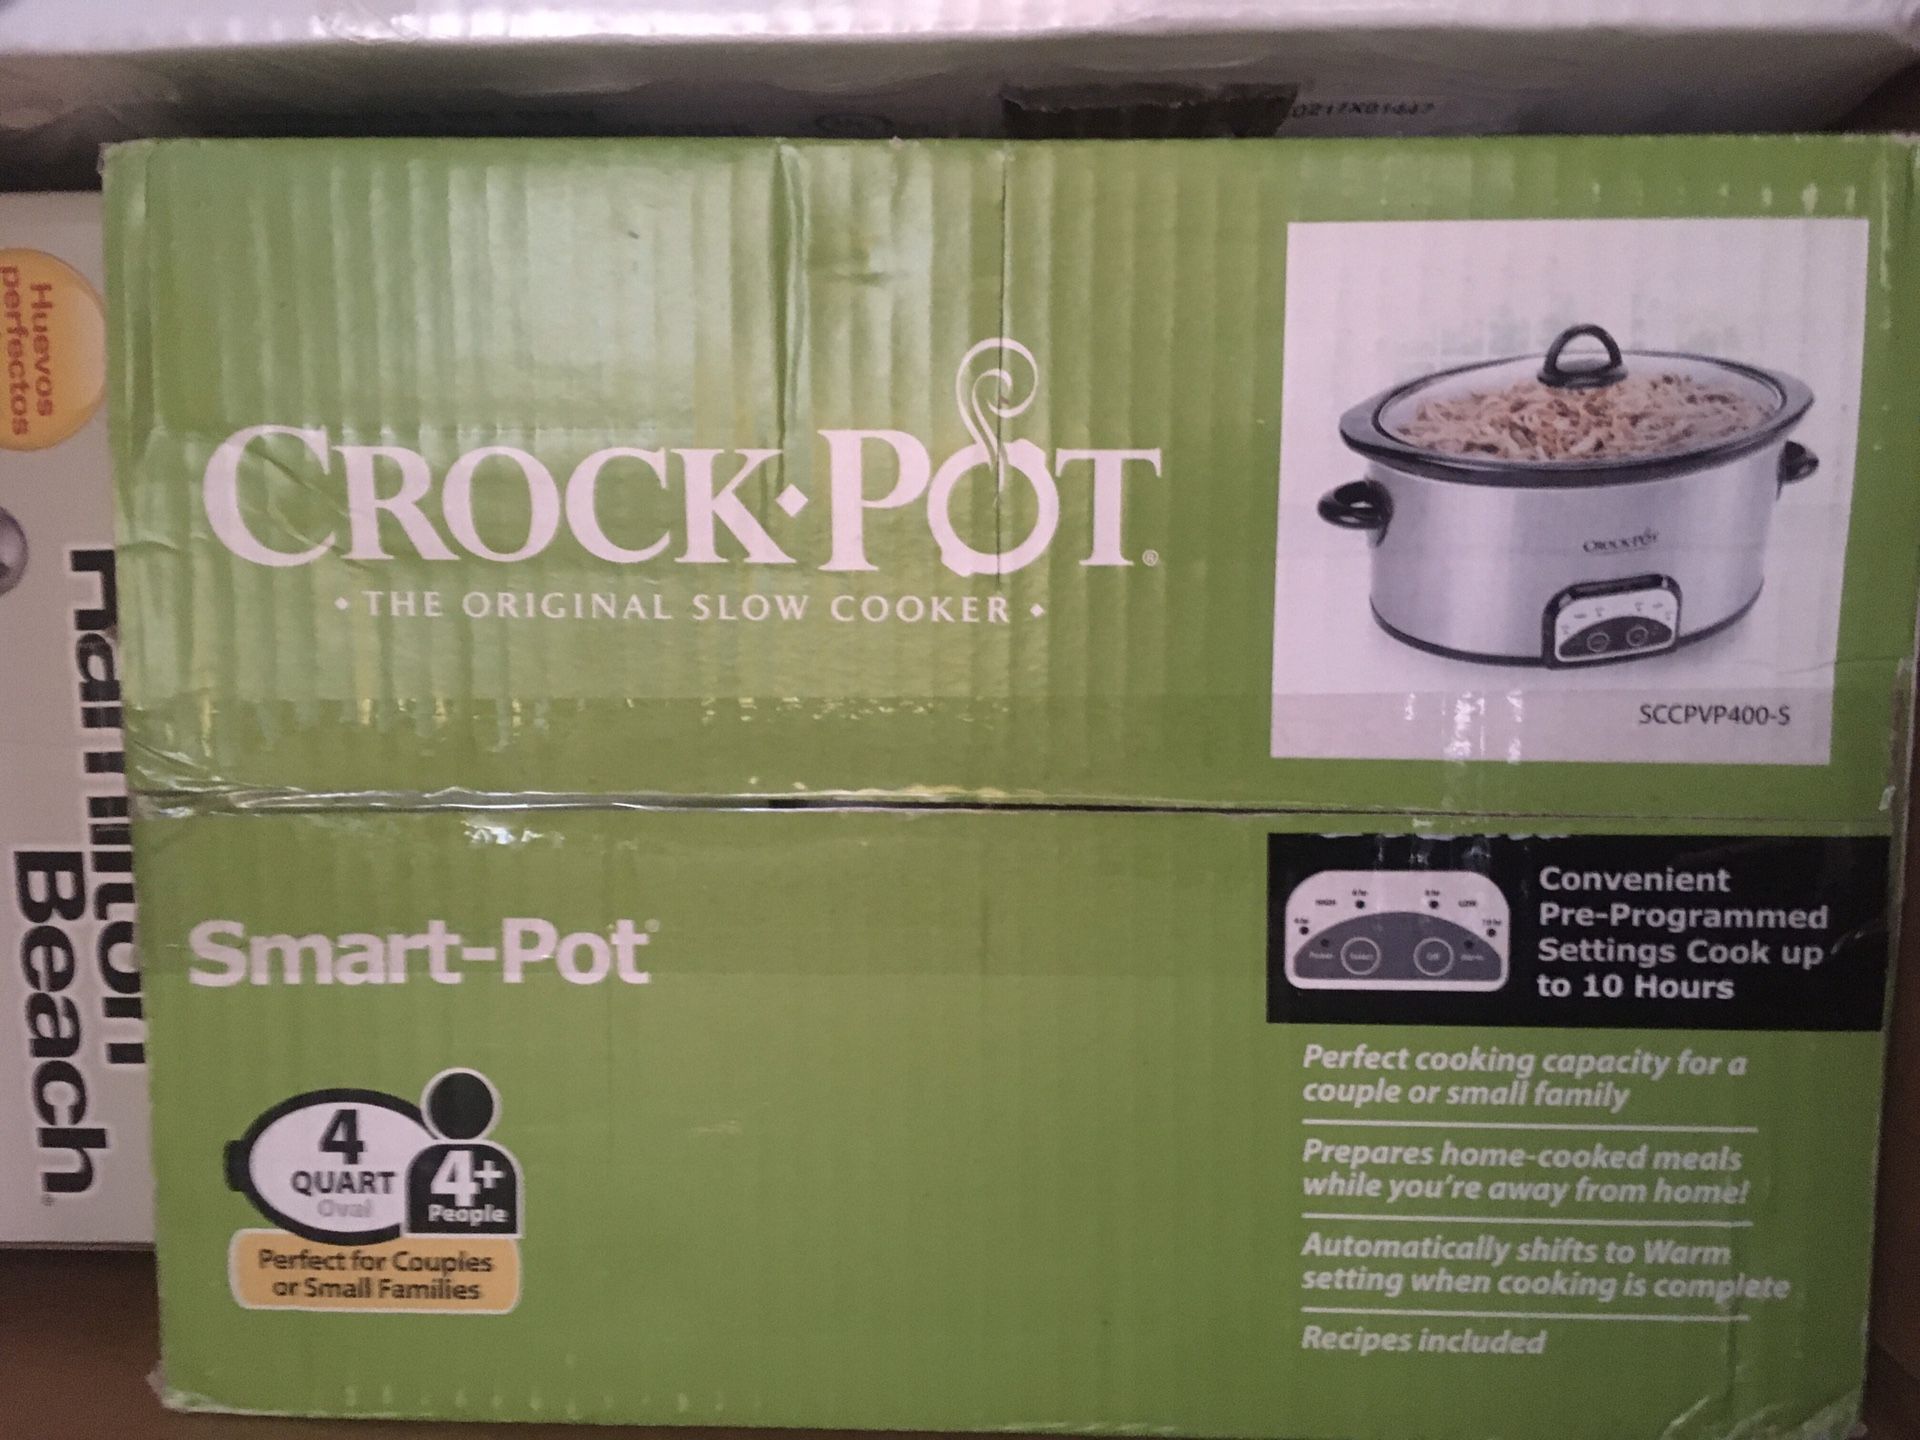 Crock pot 4 quart slow cooker